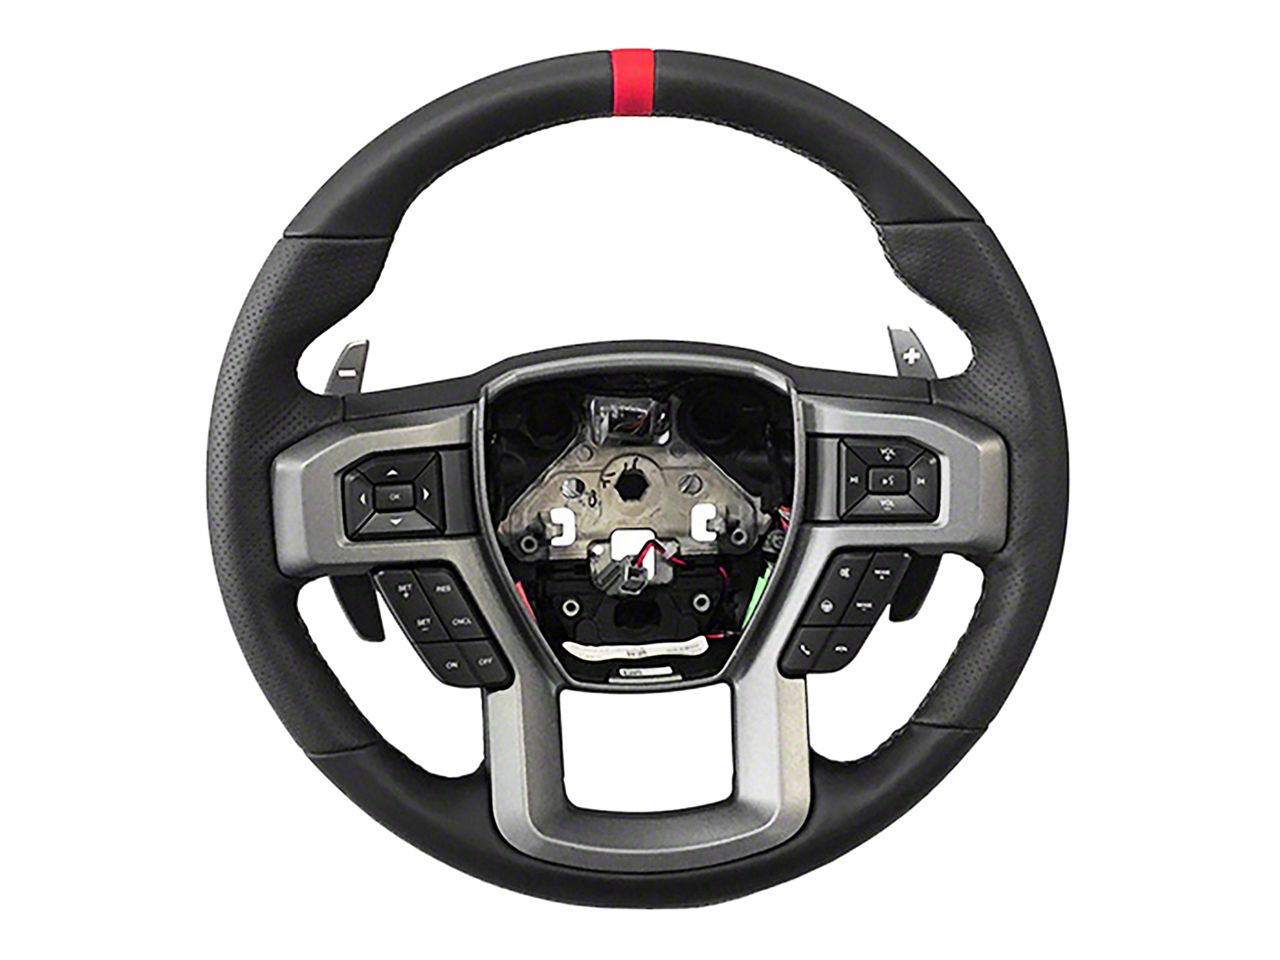 Sierra3500 Steering Wheels & Accessories